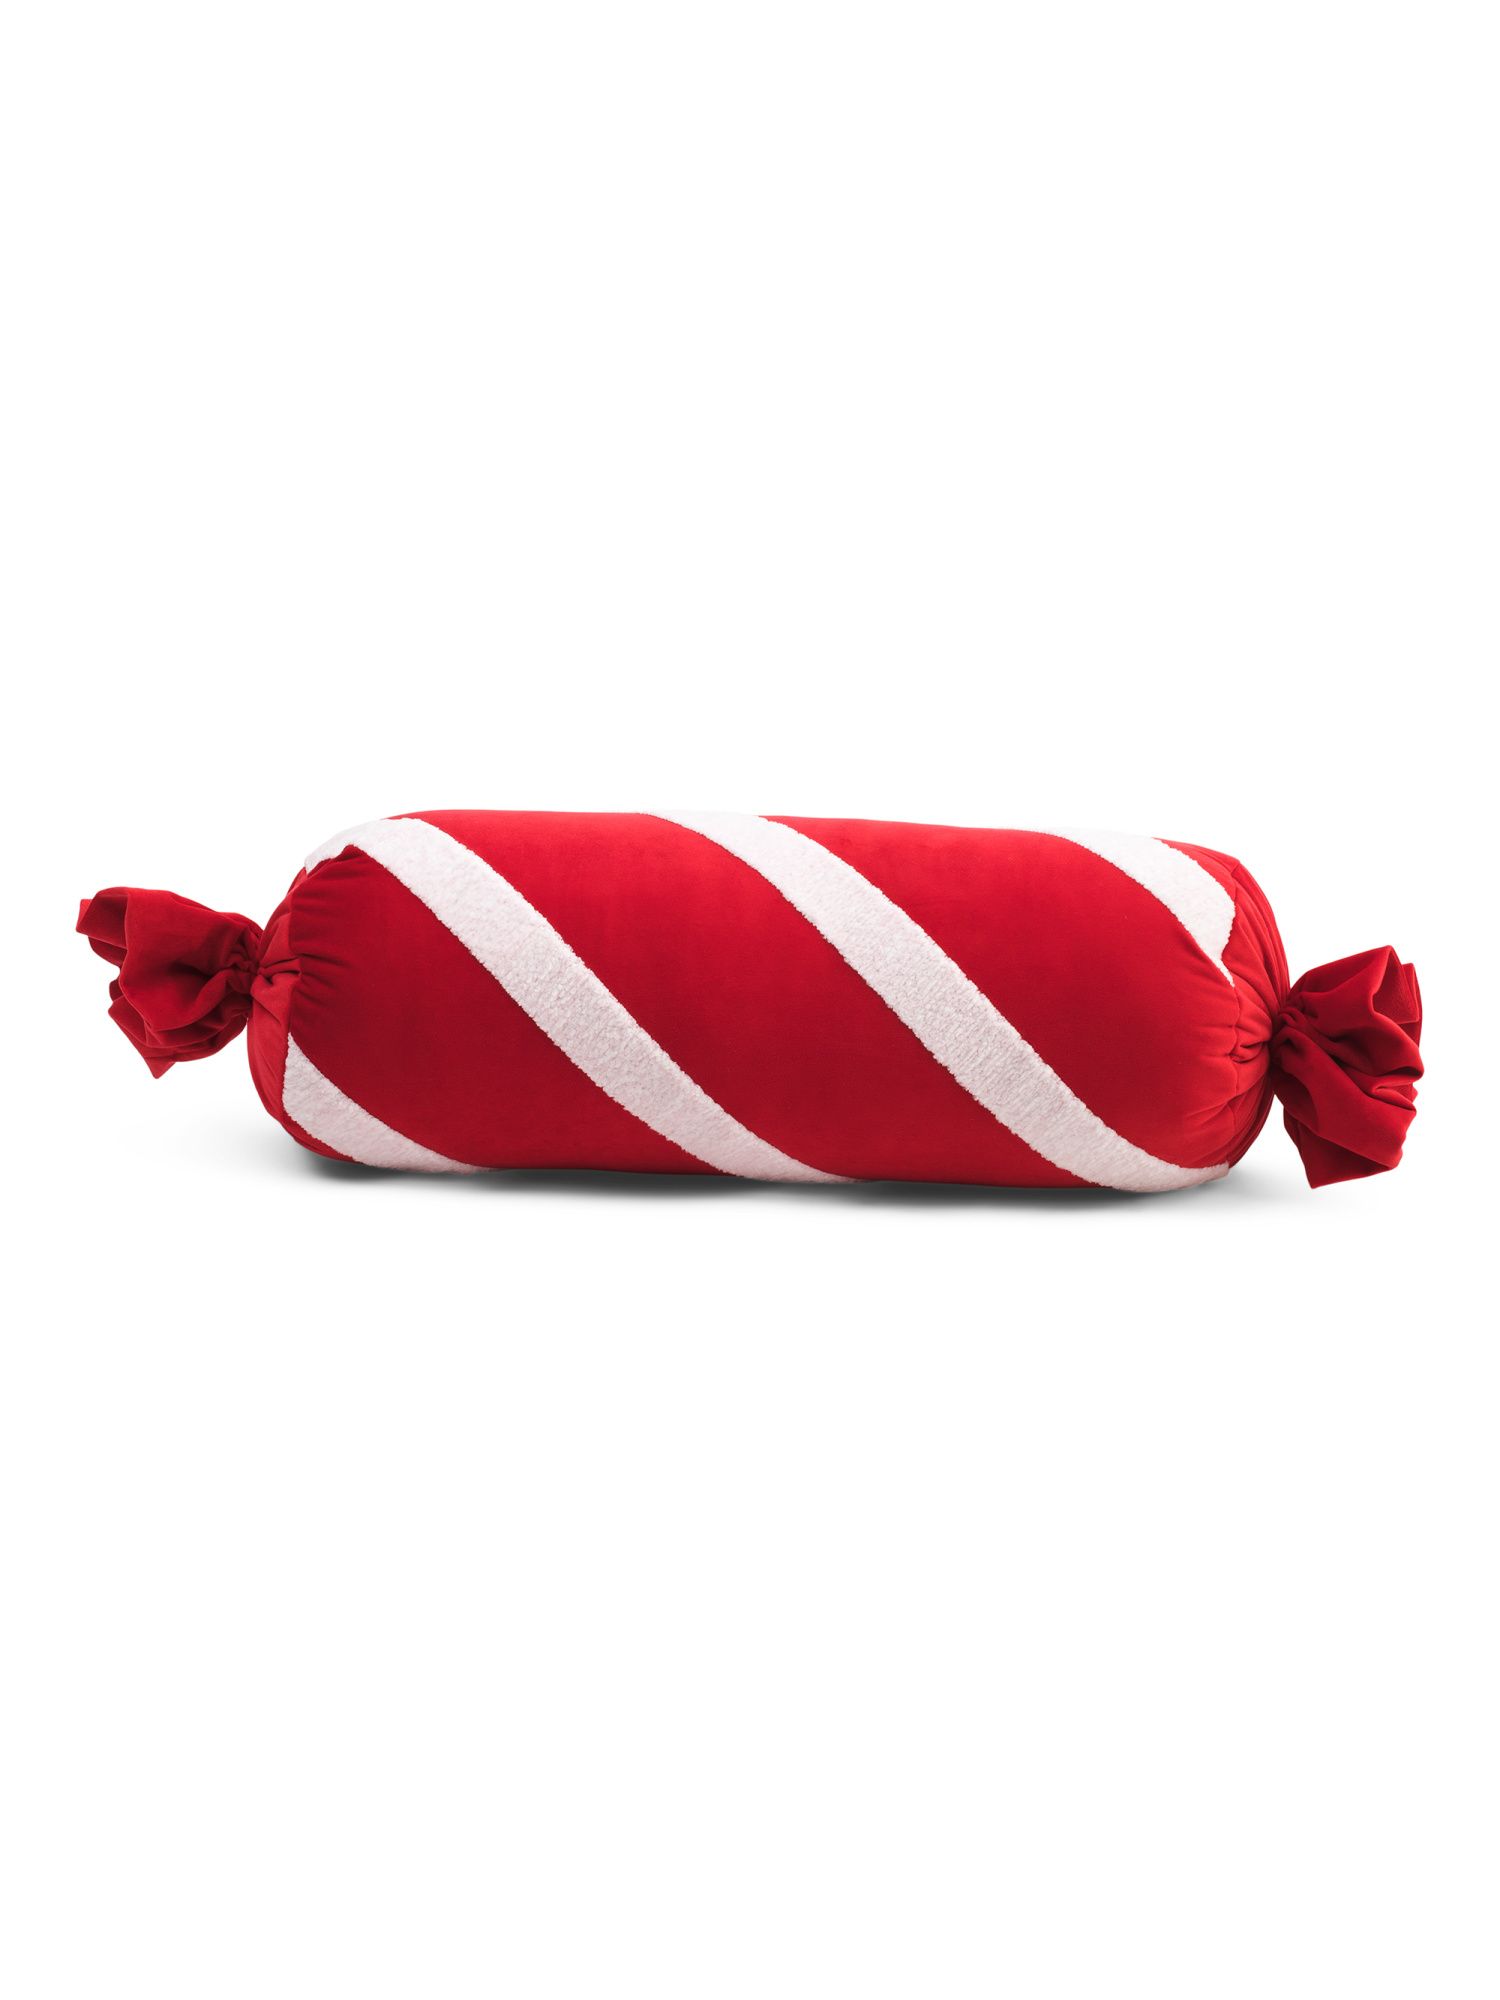 7x20 Christmas Candy Bolster Pillow | Marshalls